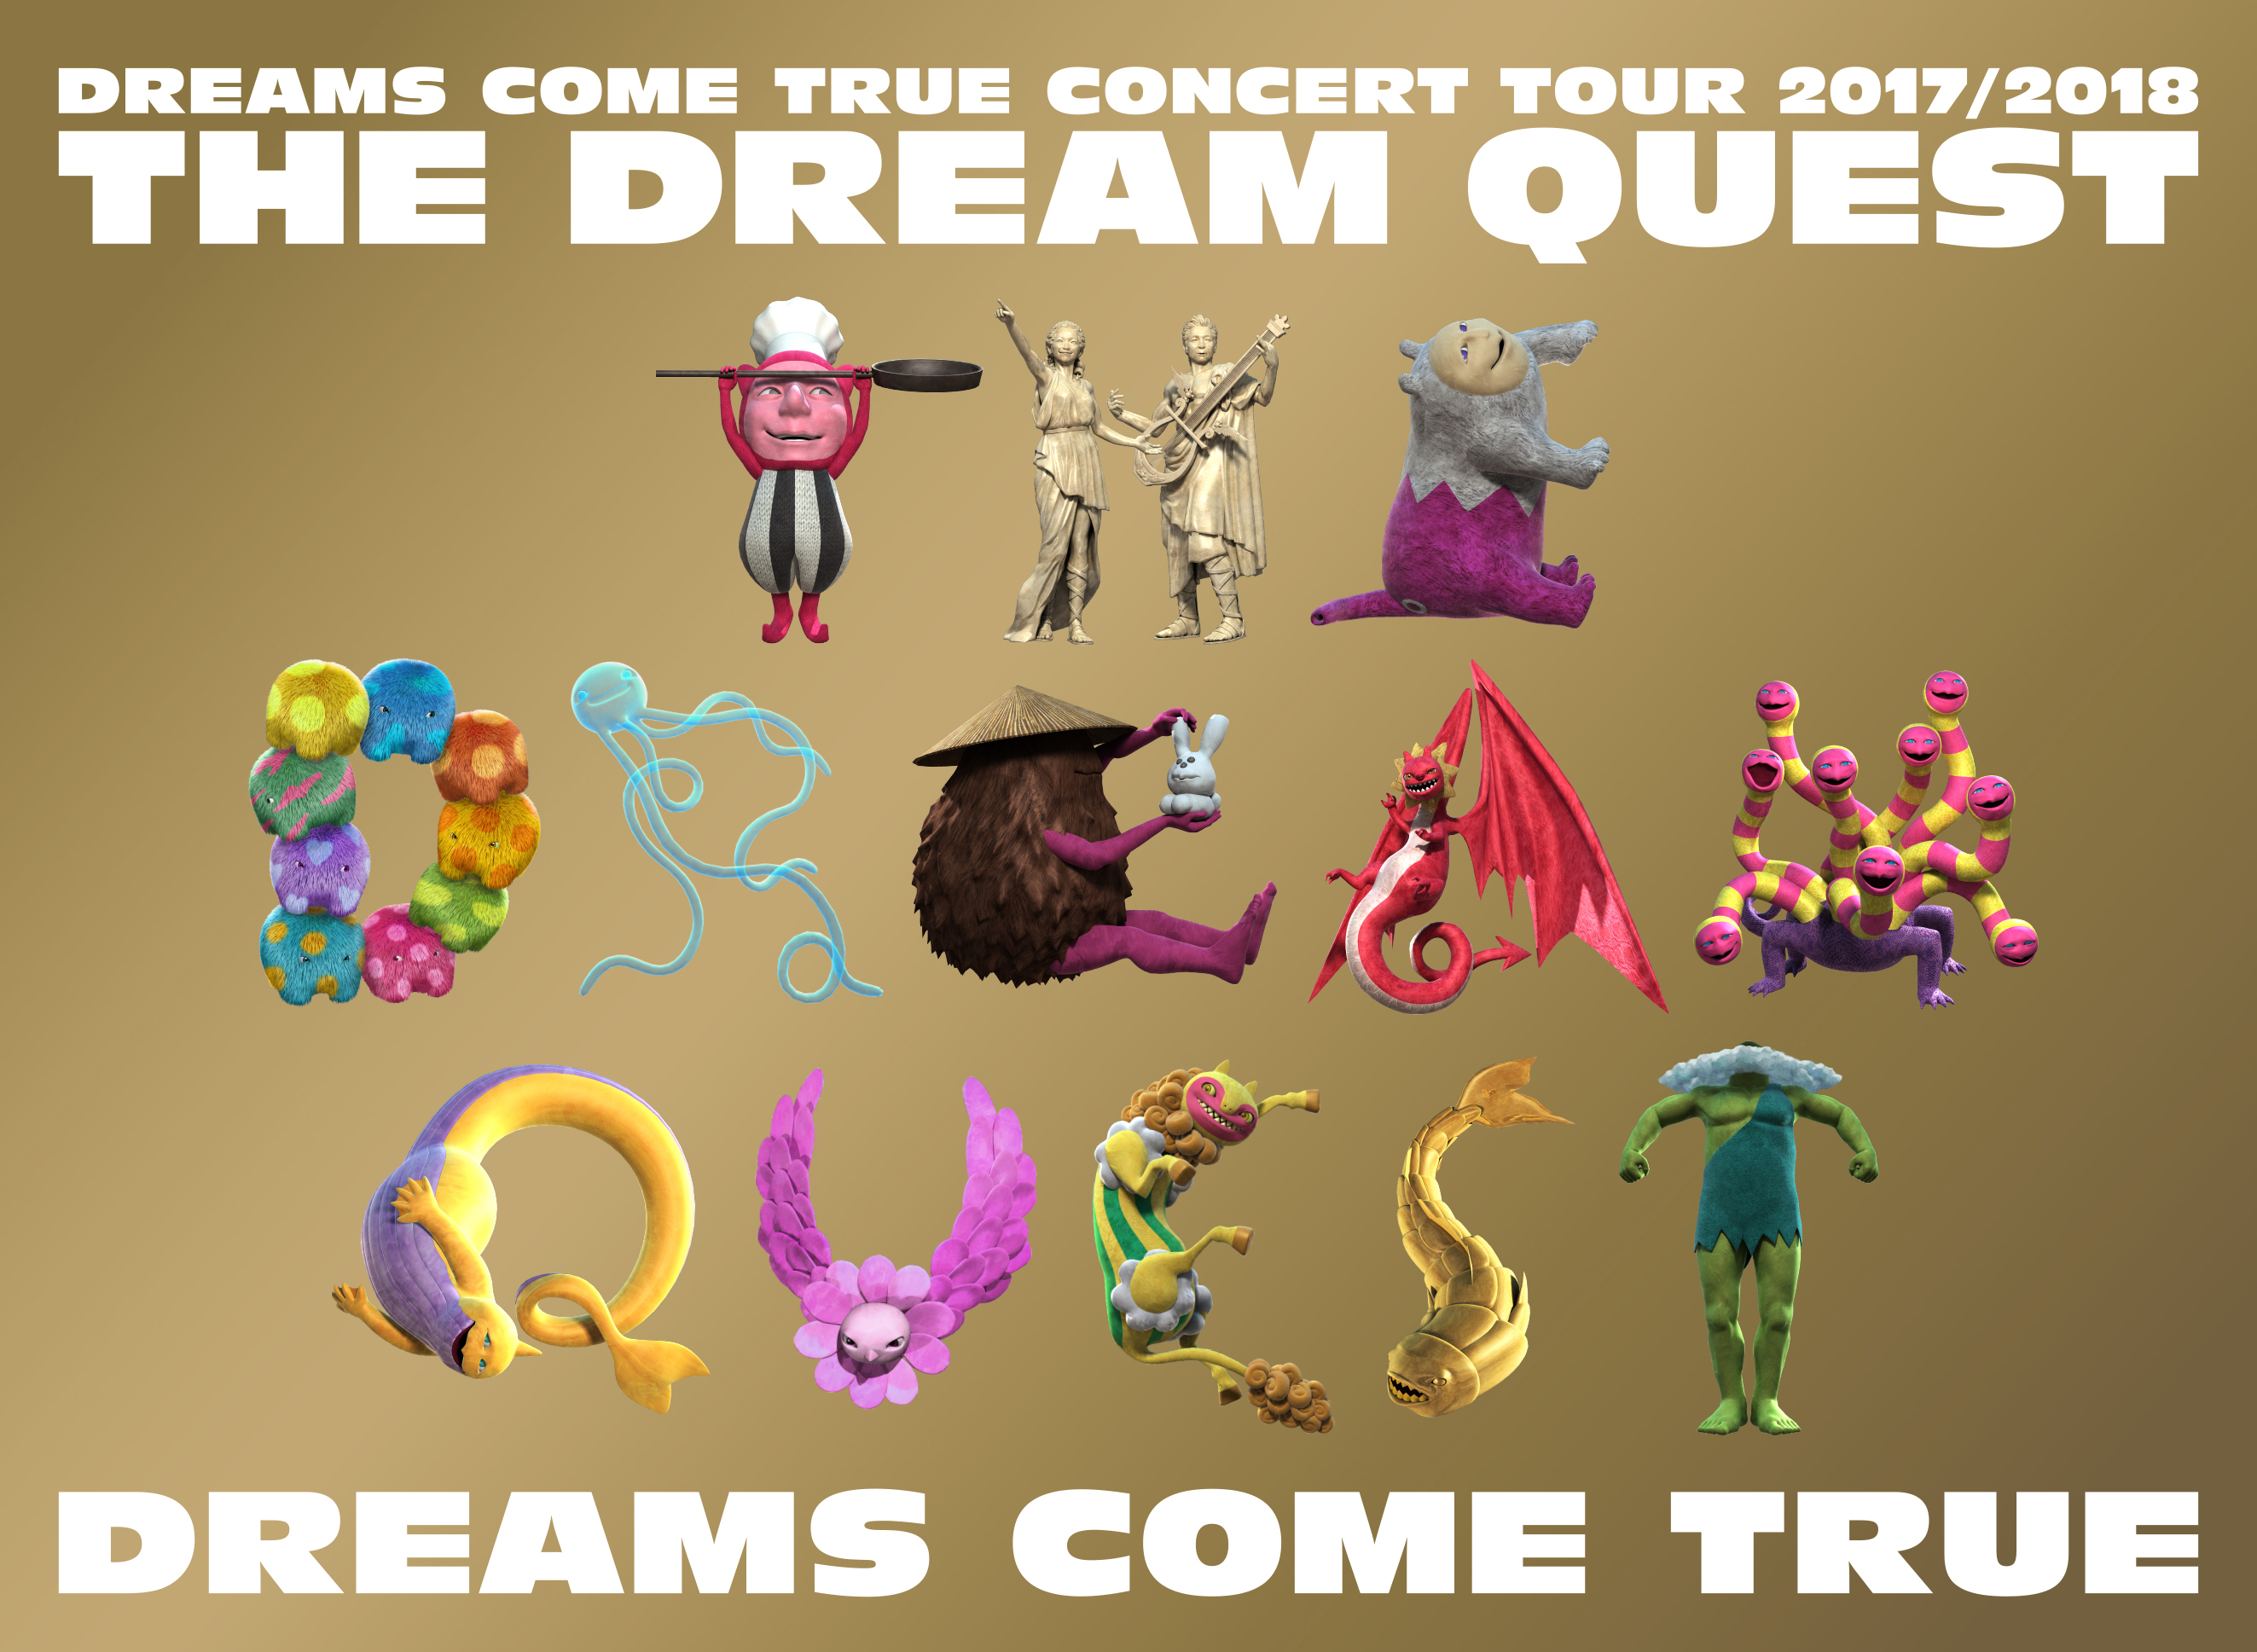 DVD/Blu-ray】DREAMS COME TRUE CONCERT TOUR 2017/2018 - THE DREAM 